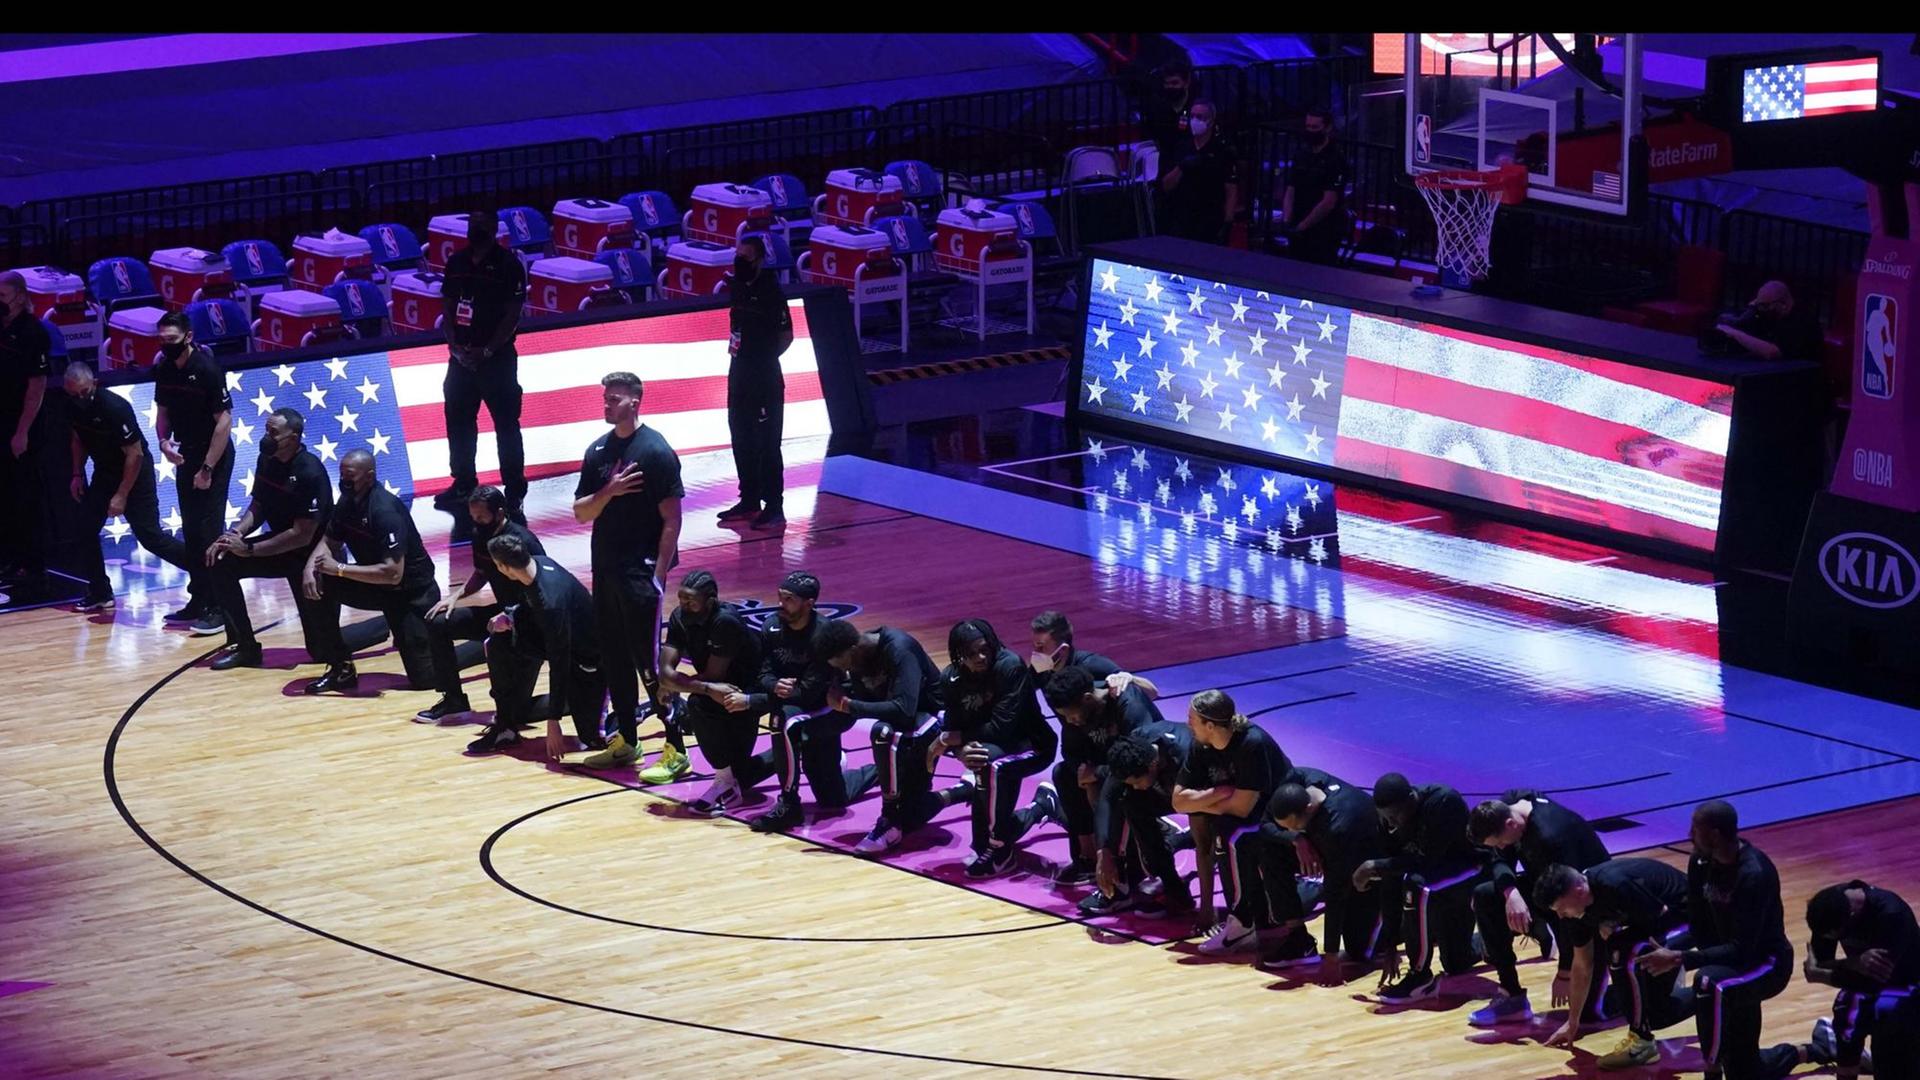 Die Mannschaft von der Basket-Ball-Mannschaft Boston Celtics kniet während der National-Hymne.